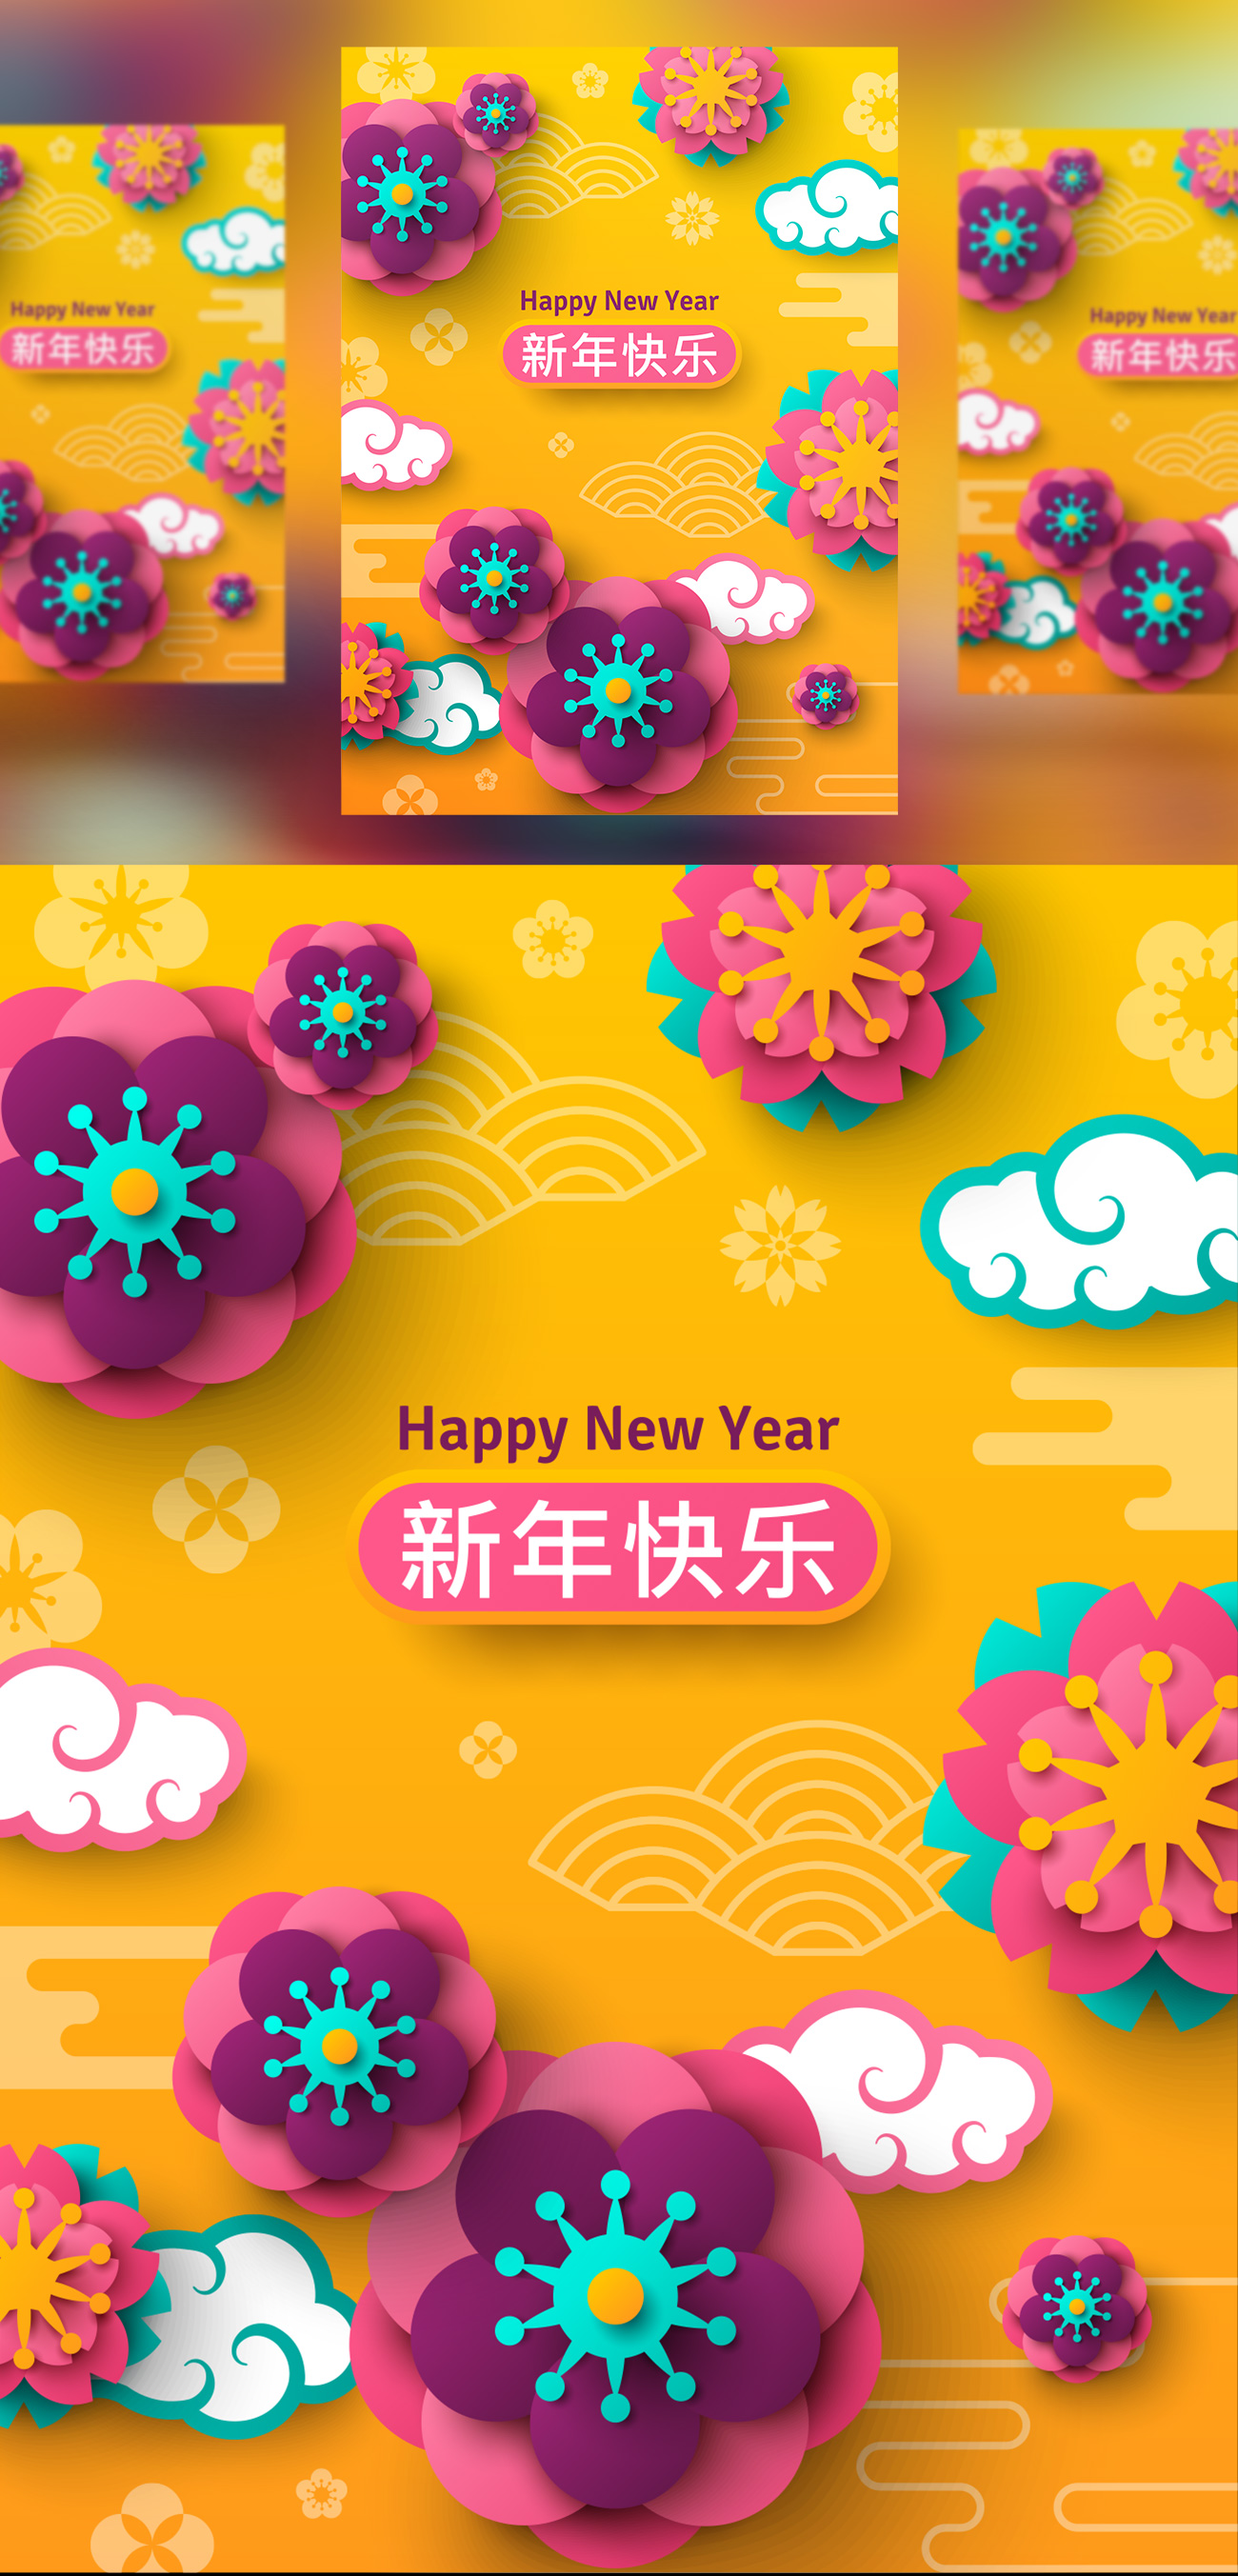 2019年中国新年剪纸花卉现代东方风格矢量模版素材 Bann